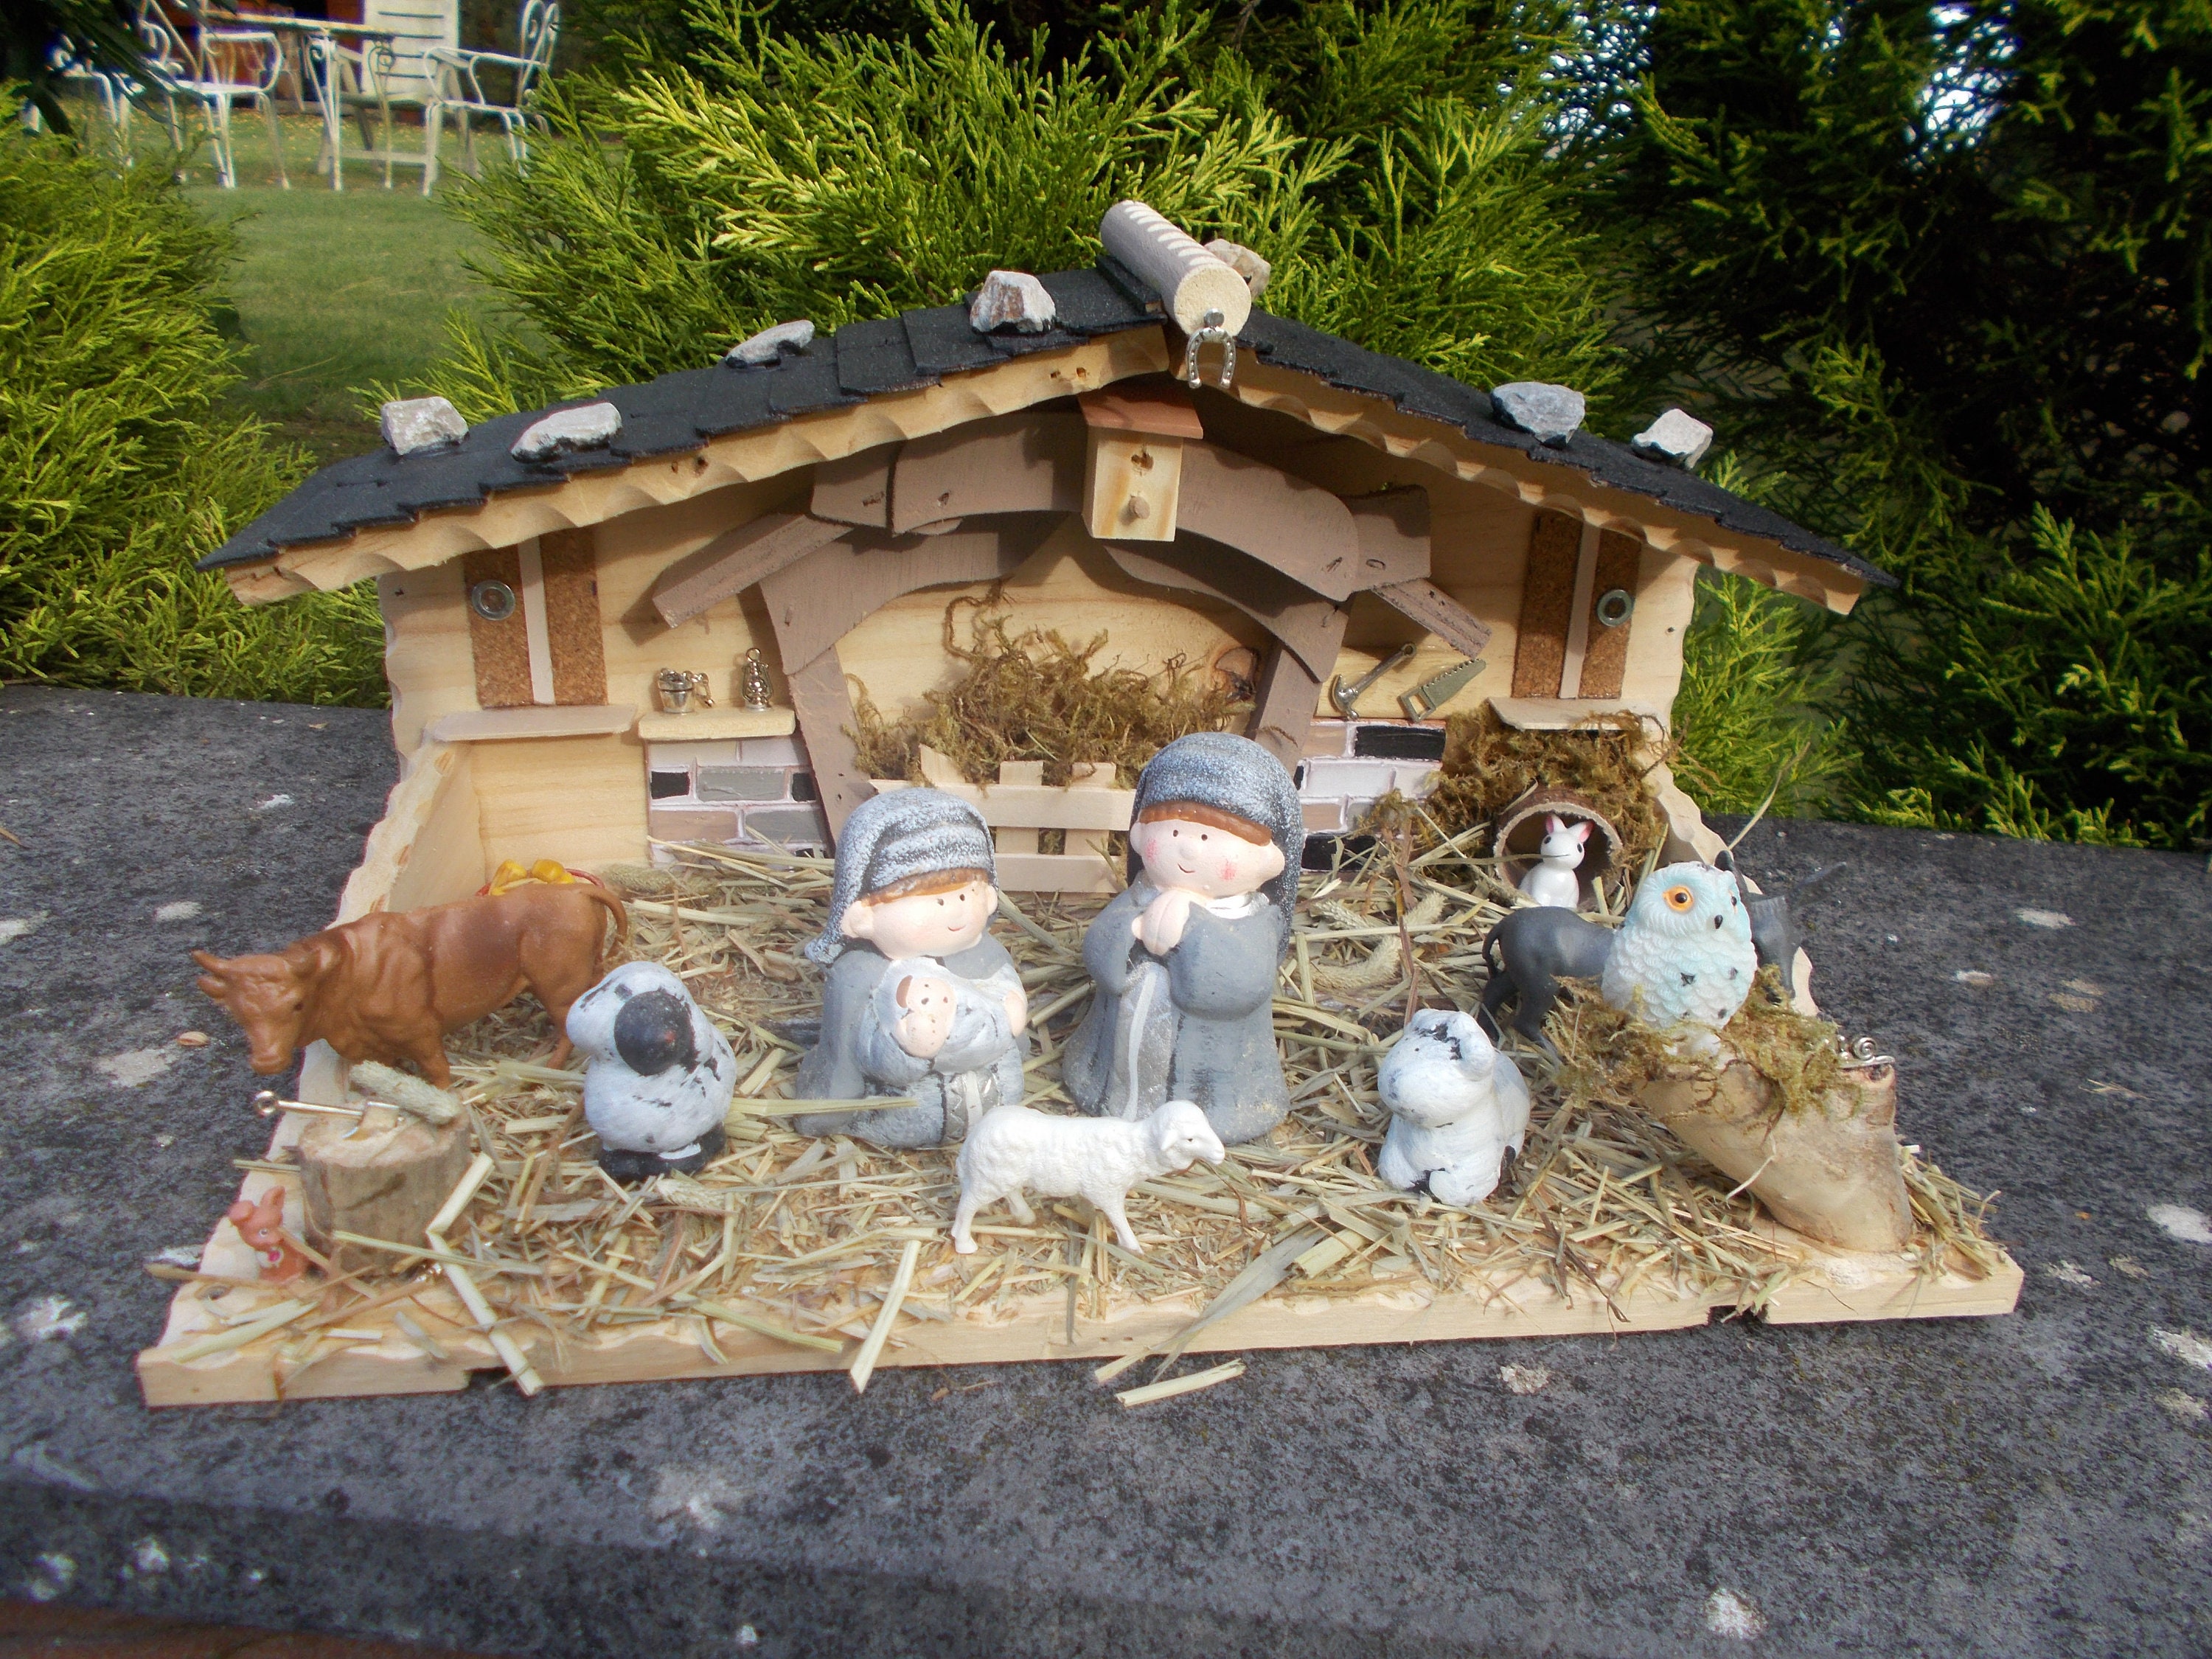 Crèche de Noël - Mini ornement traditionnel de Jésus festif de